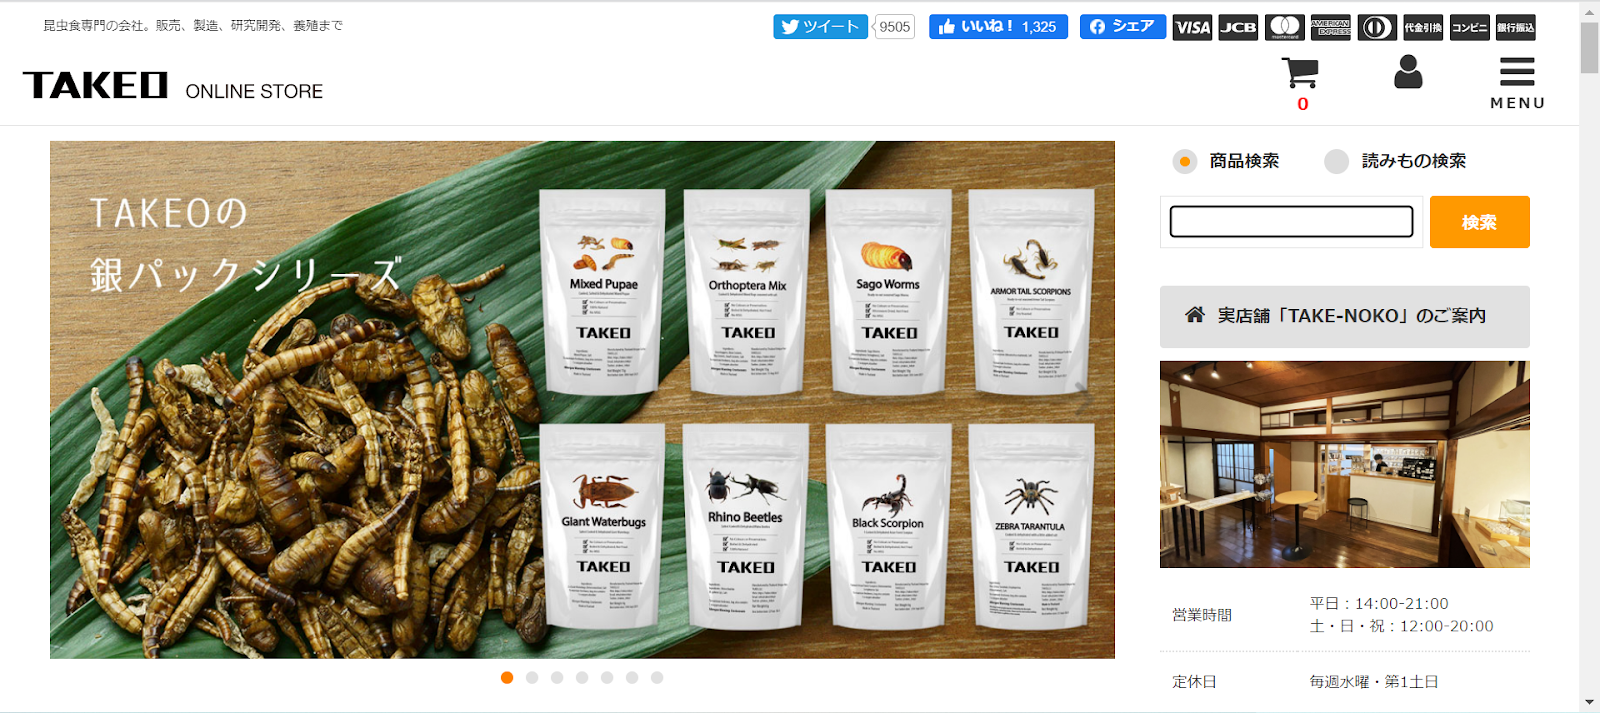 日本の昆虫食企業 TAKEO公式HPの画像